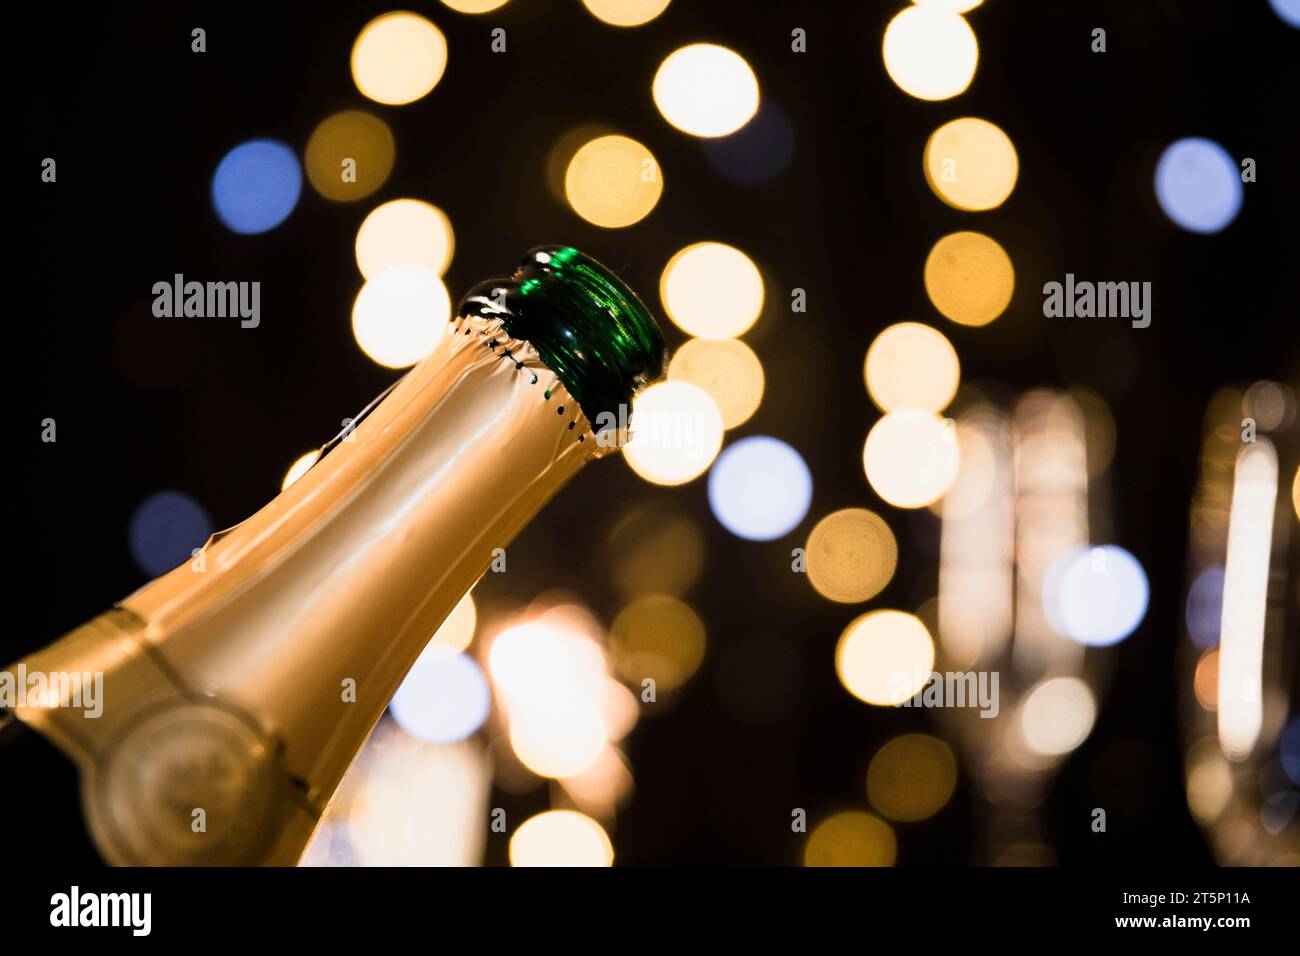 Fond de nouvel an avec champagne Banque D'Images